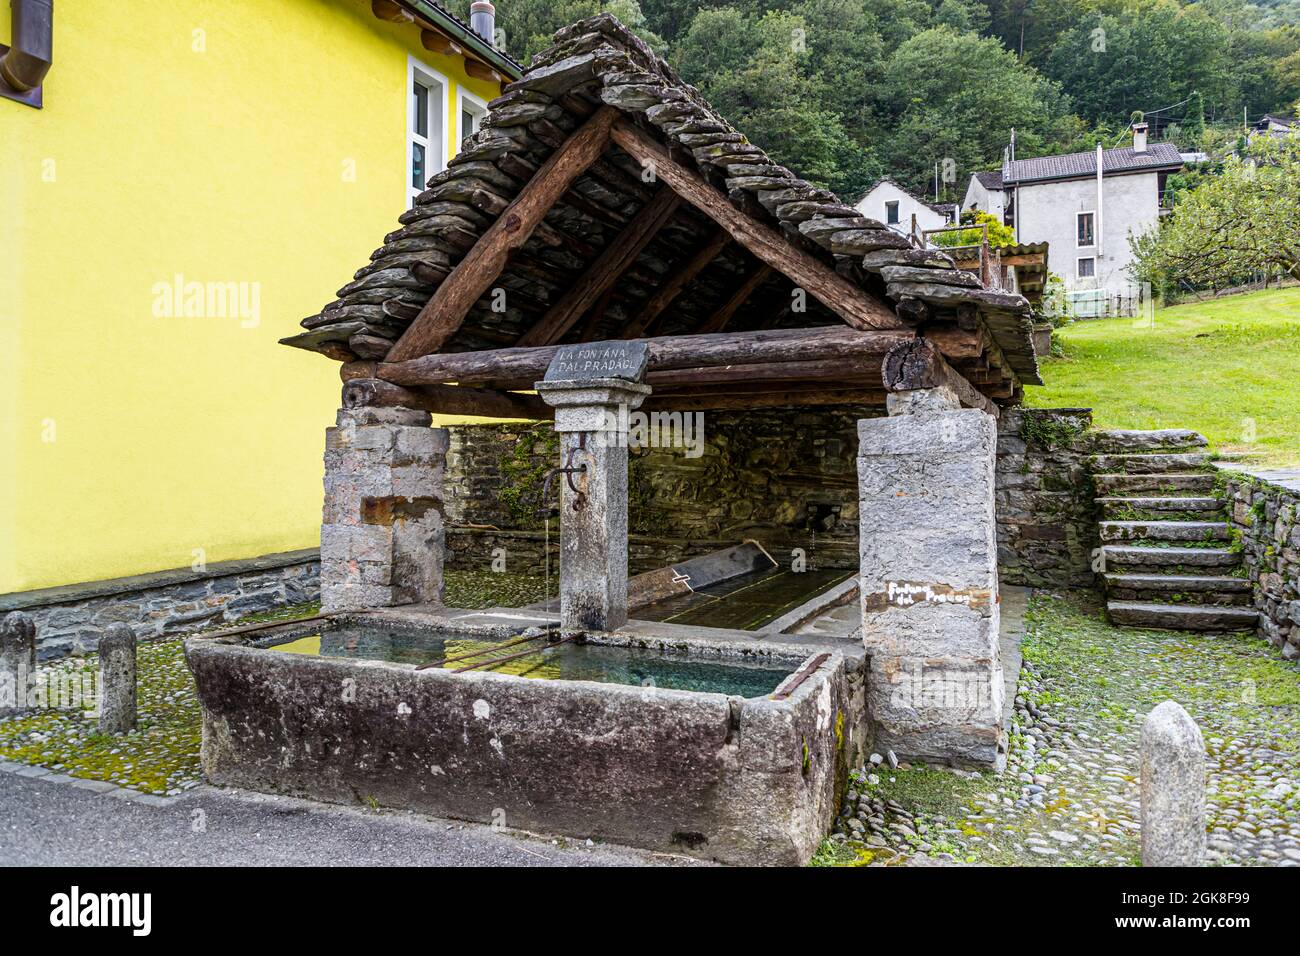 Public historical washhouse in Moghegno, Circolo della Maggia, Switzerland Stock Photo